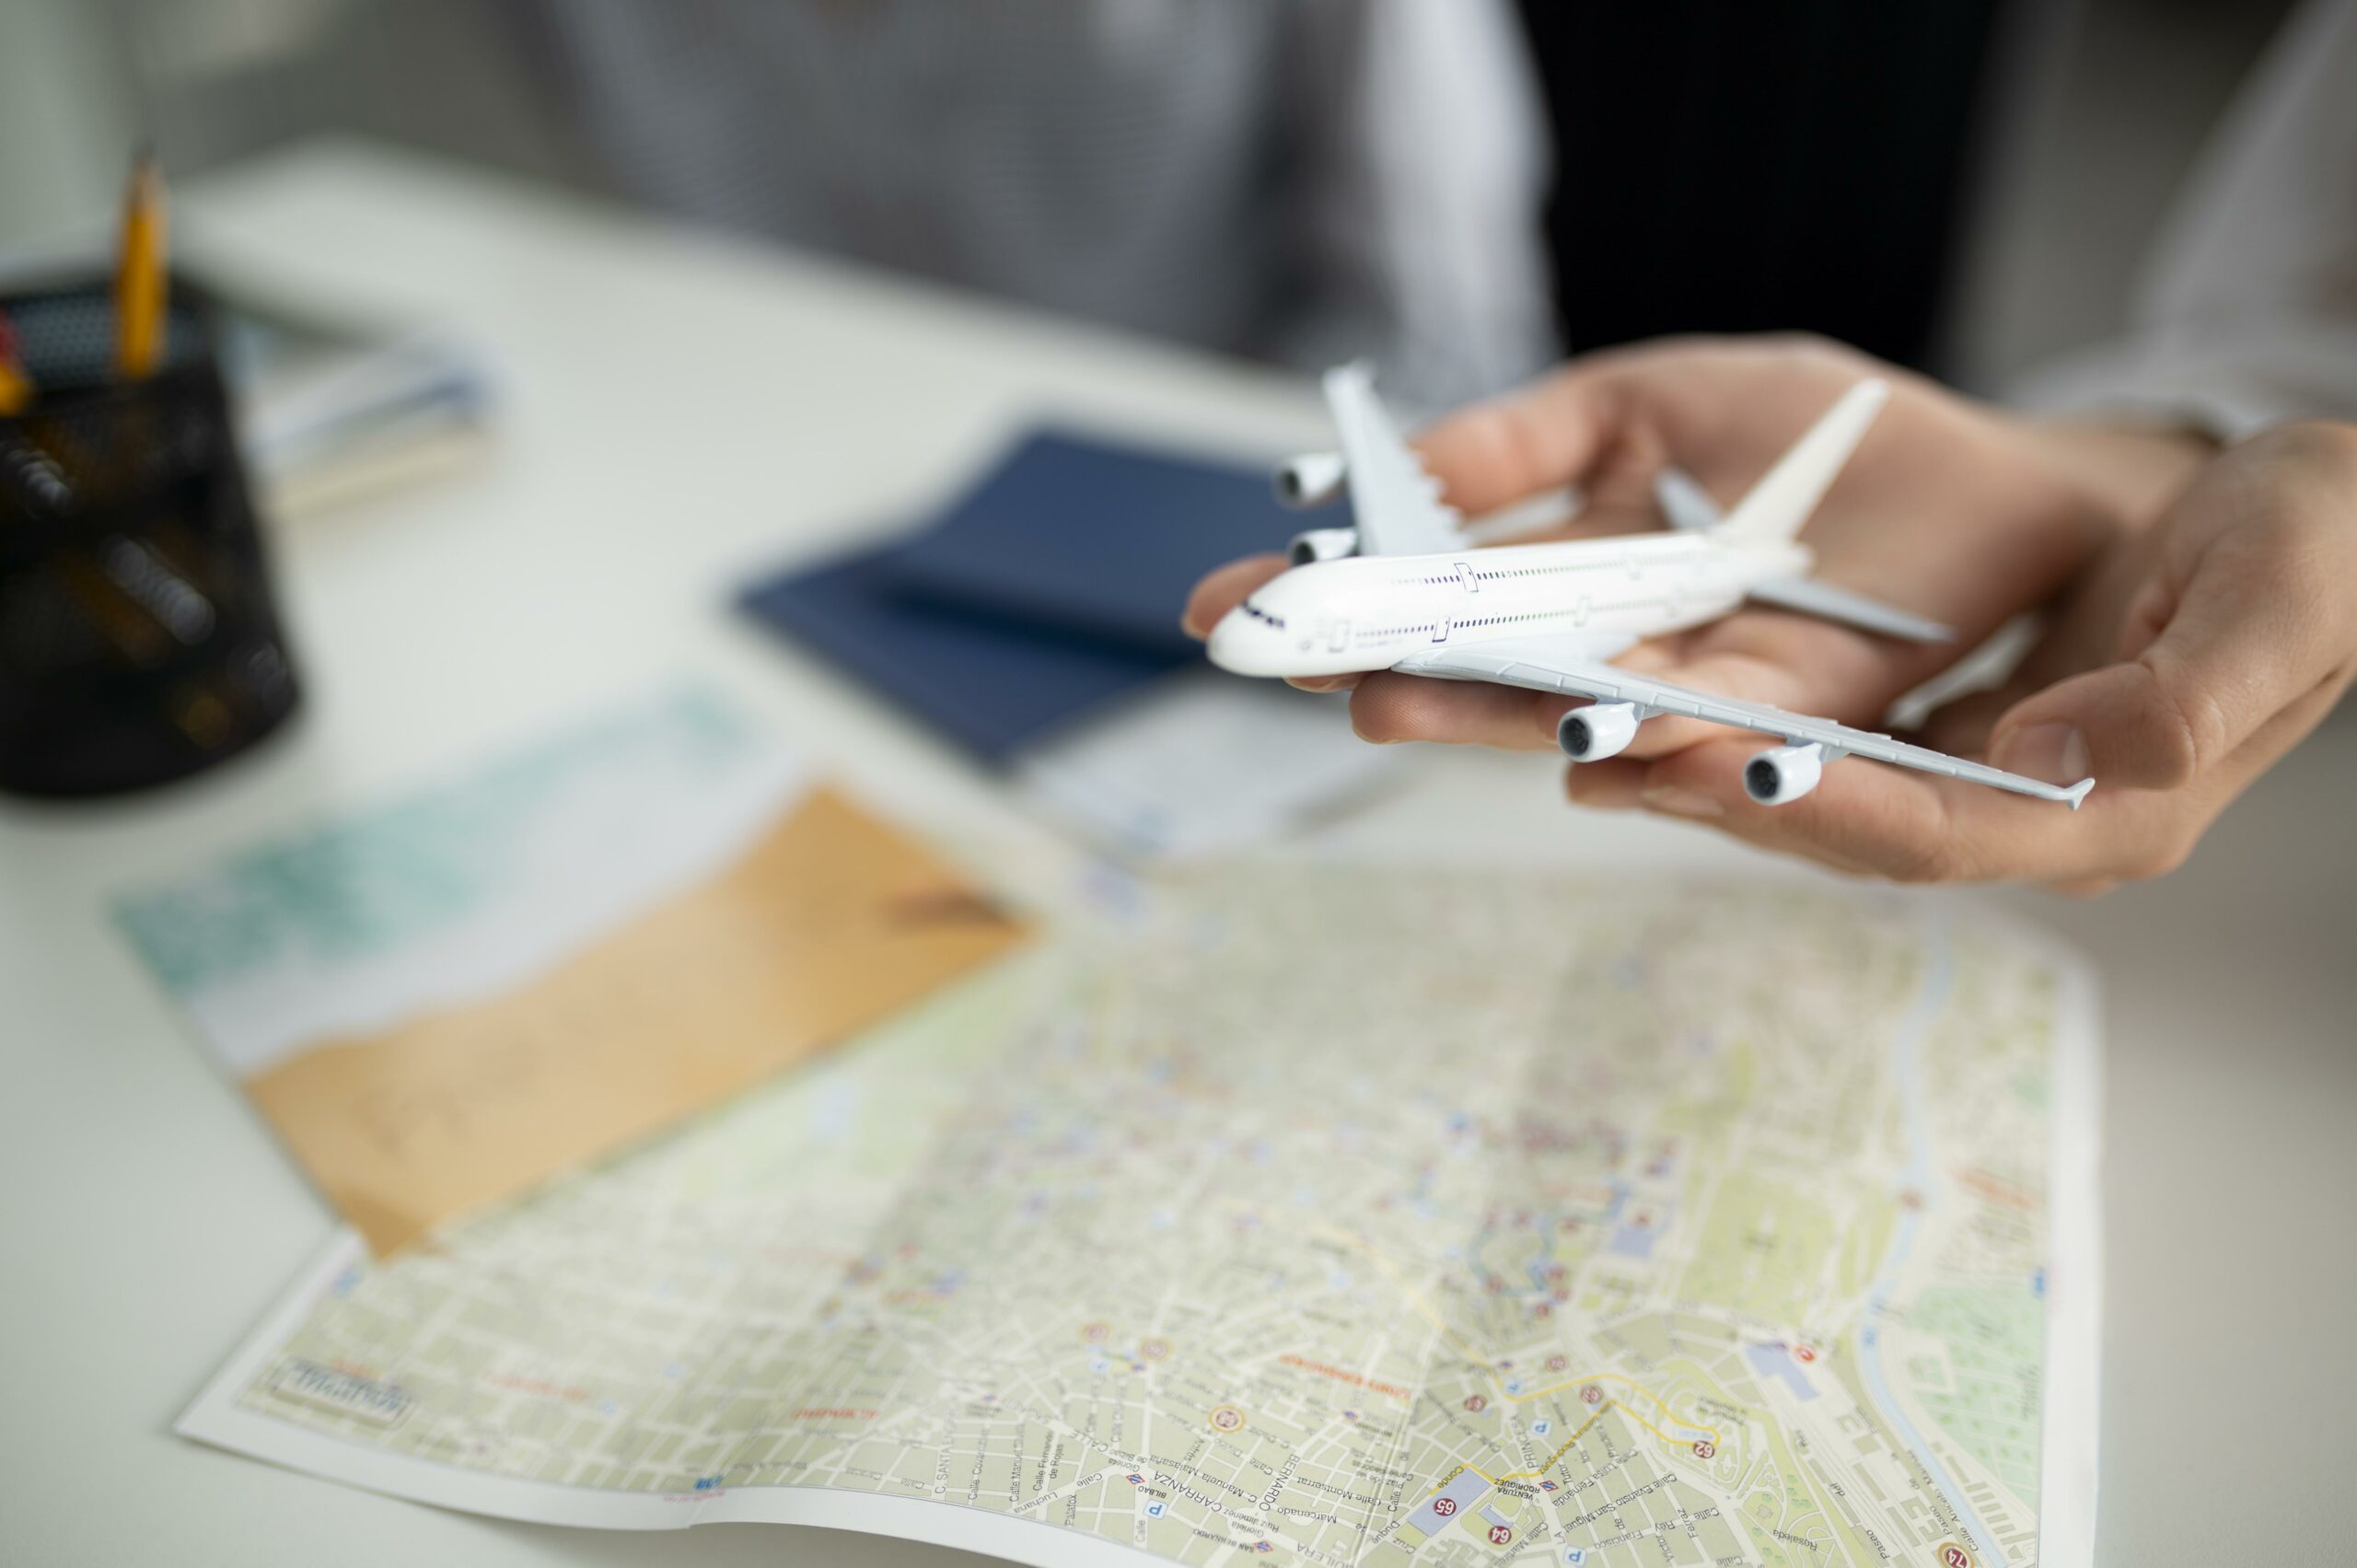 Uçak Yolculuğu İçin Önemli İpuçları: Rahat ve Sorunsuz Bir Seyahat İçin Nelere Dikkat Etmelisiniz?